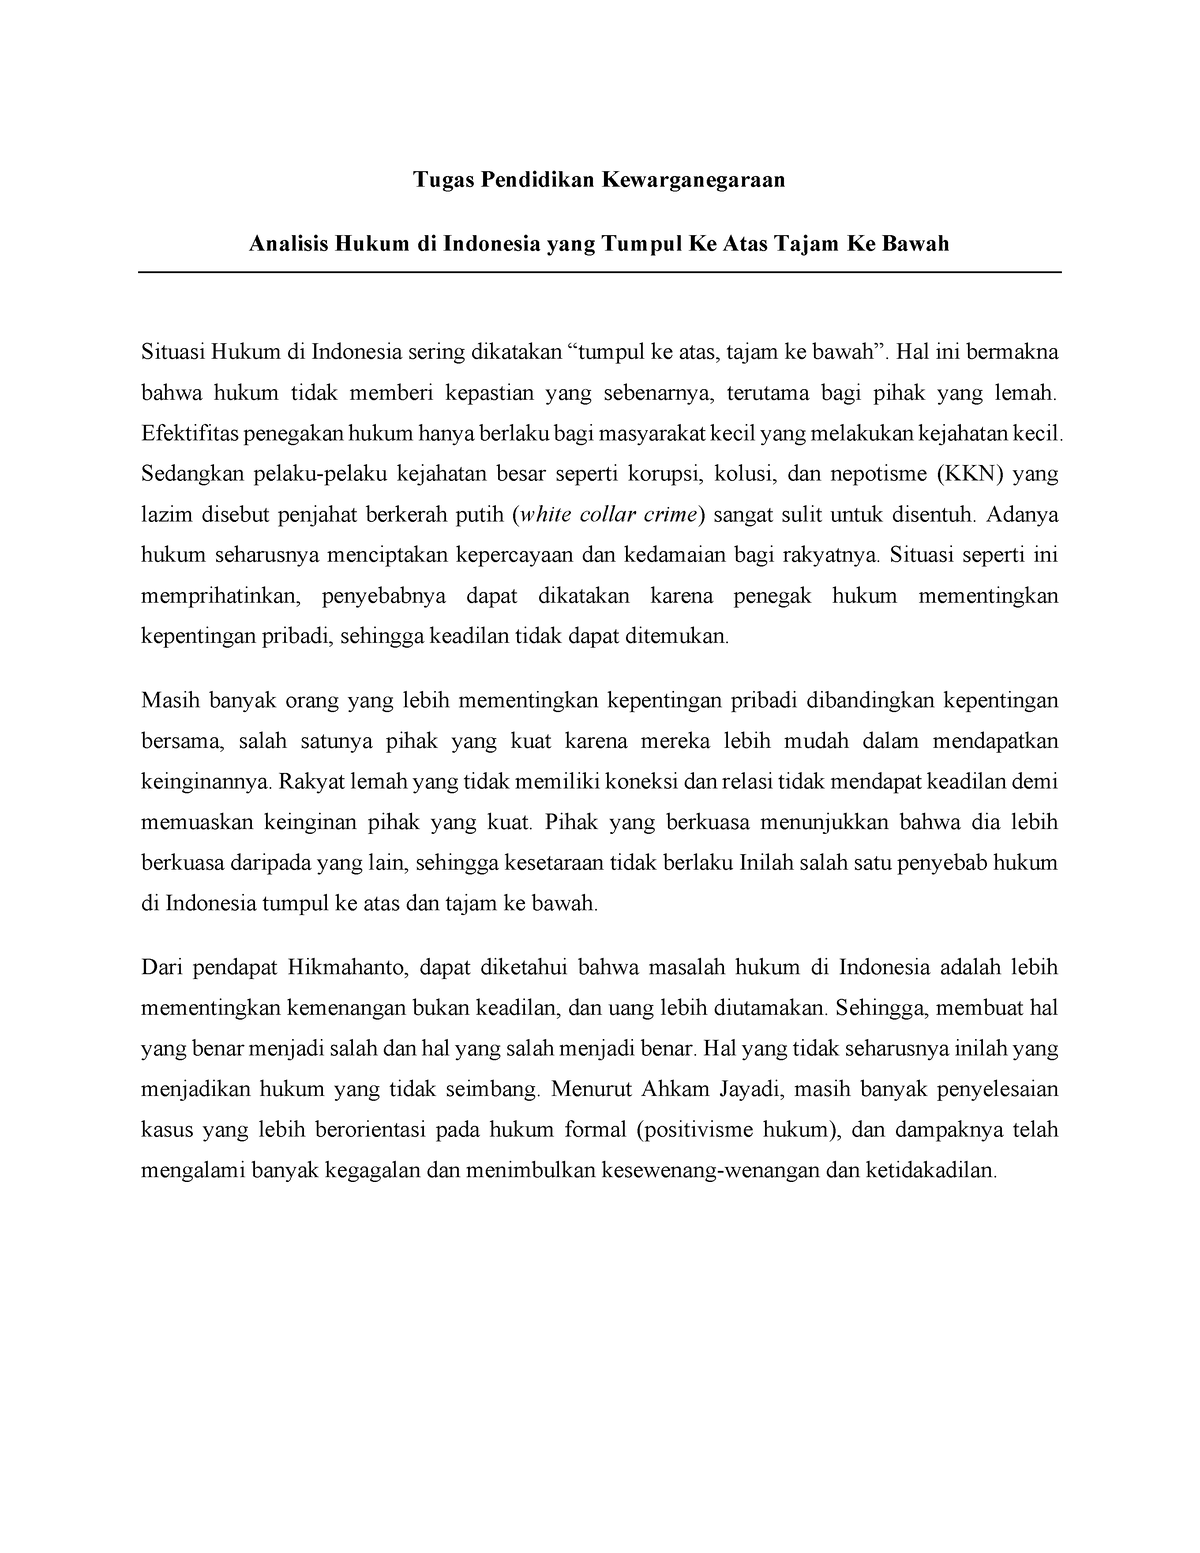 Analisis Hukum Tumpul Ke Atas Tajam Ke Bawah Di Indonesia Tugas Pendidikan Kewarganegaraan 